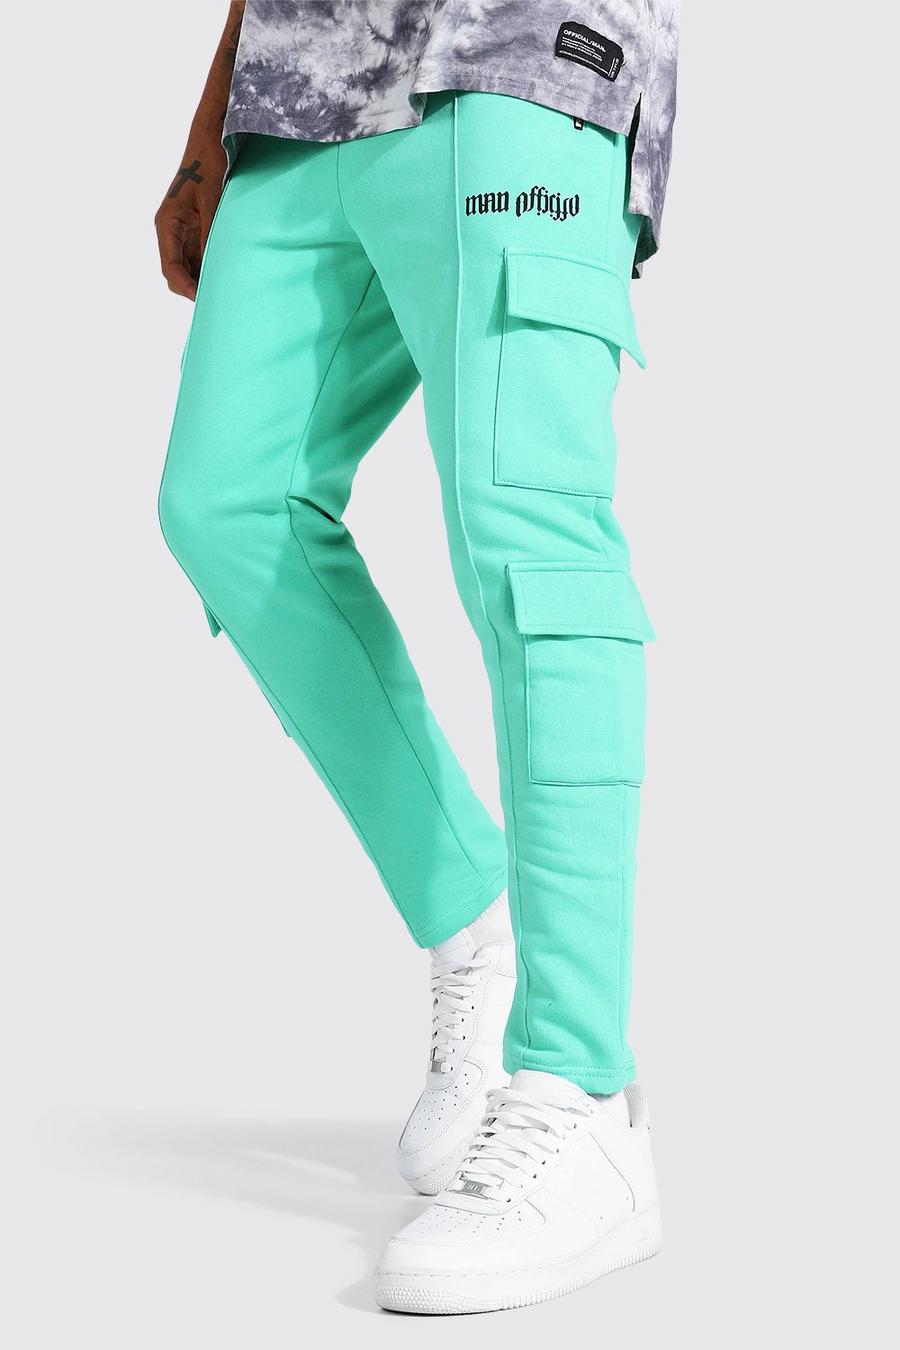 Pantaloni tuta regolari Official in stile Cargo con nervatura, Green image number 1